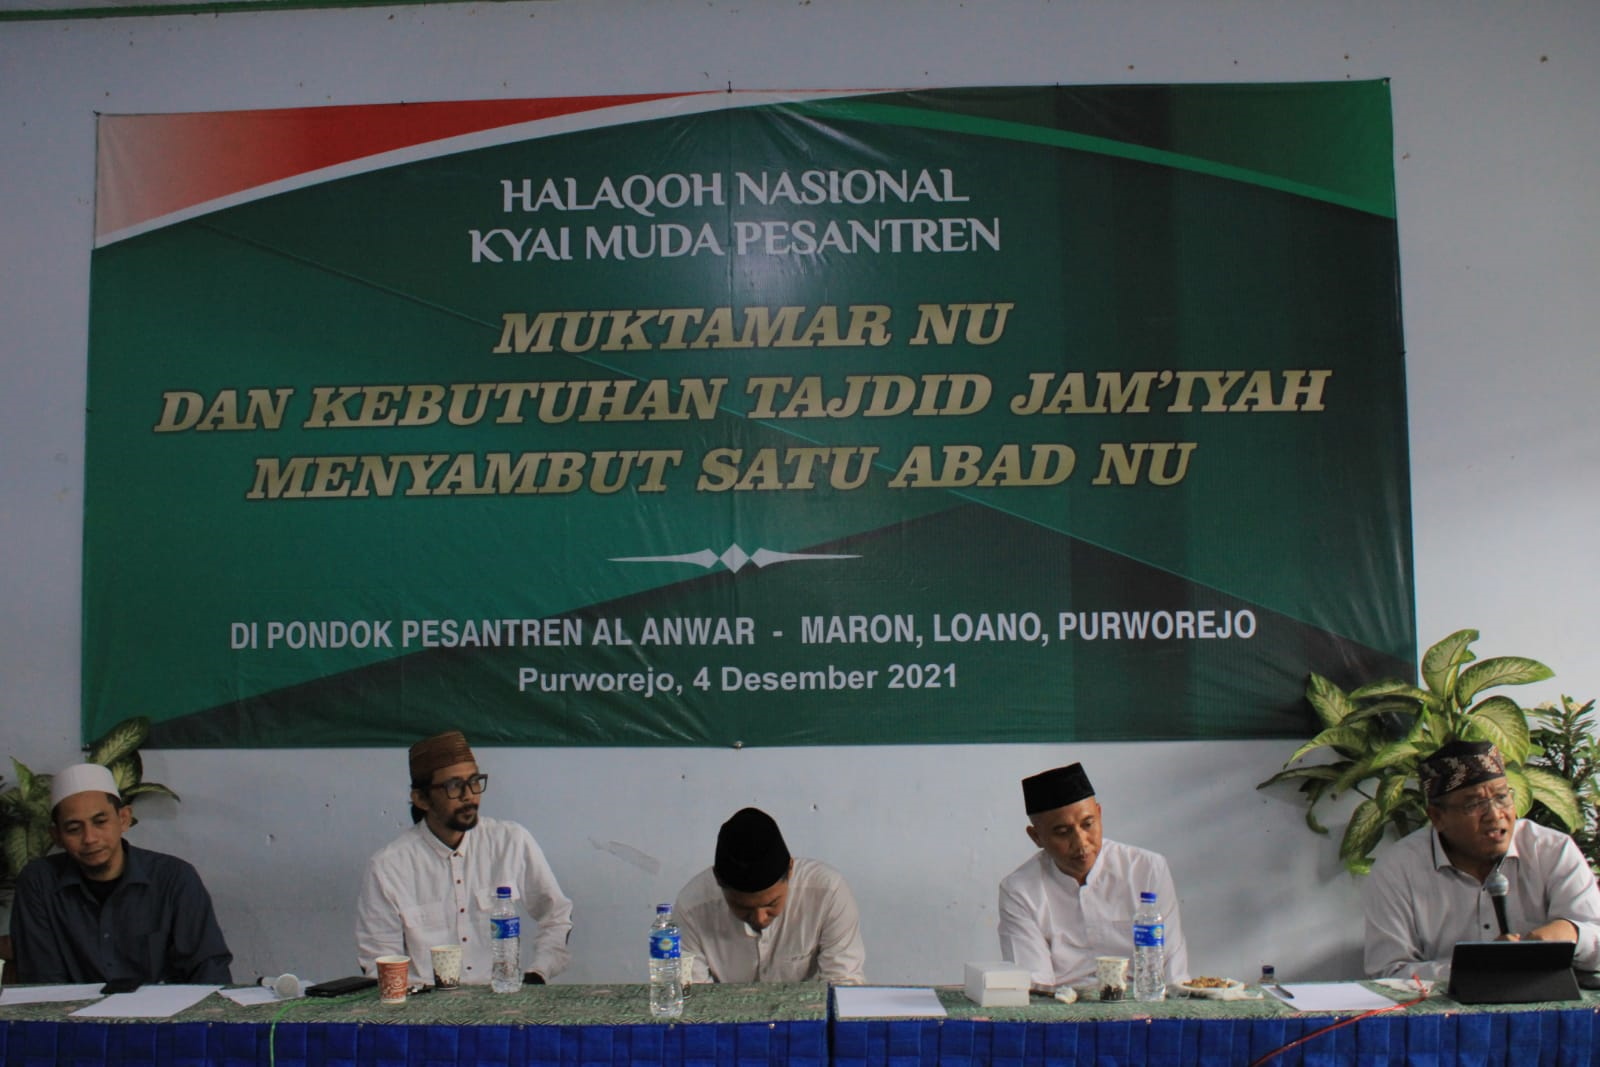 Para kiai muda pesantren NU dari berbagai daerah di Pulau Jawa menggelar pertemuan di Pondok Pesantren Al Anwar Maron Loano asuhan KHR Mahfudz Hamid, di Purworejo, Jawa Tengah, Sabtu 4 Desember 2021.